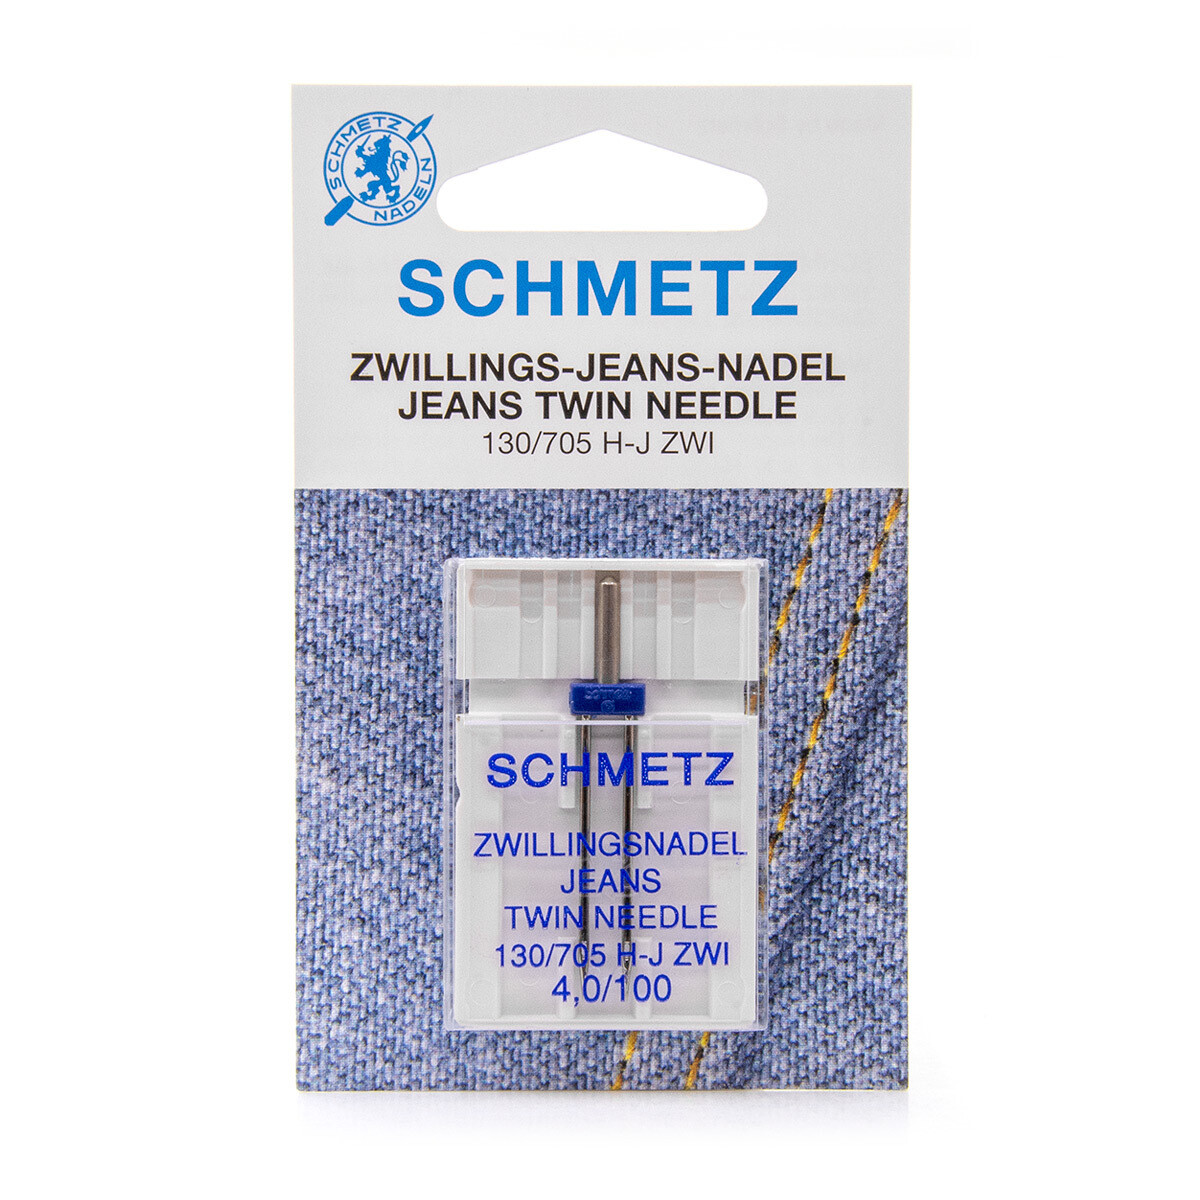 Schmetz tweelingnaald jeans 4,0/100